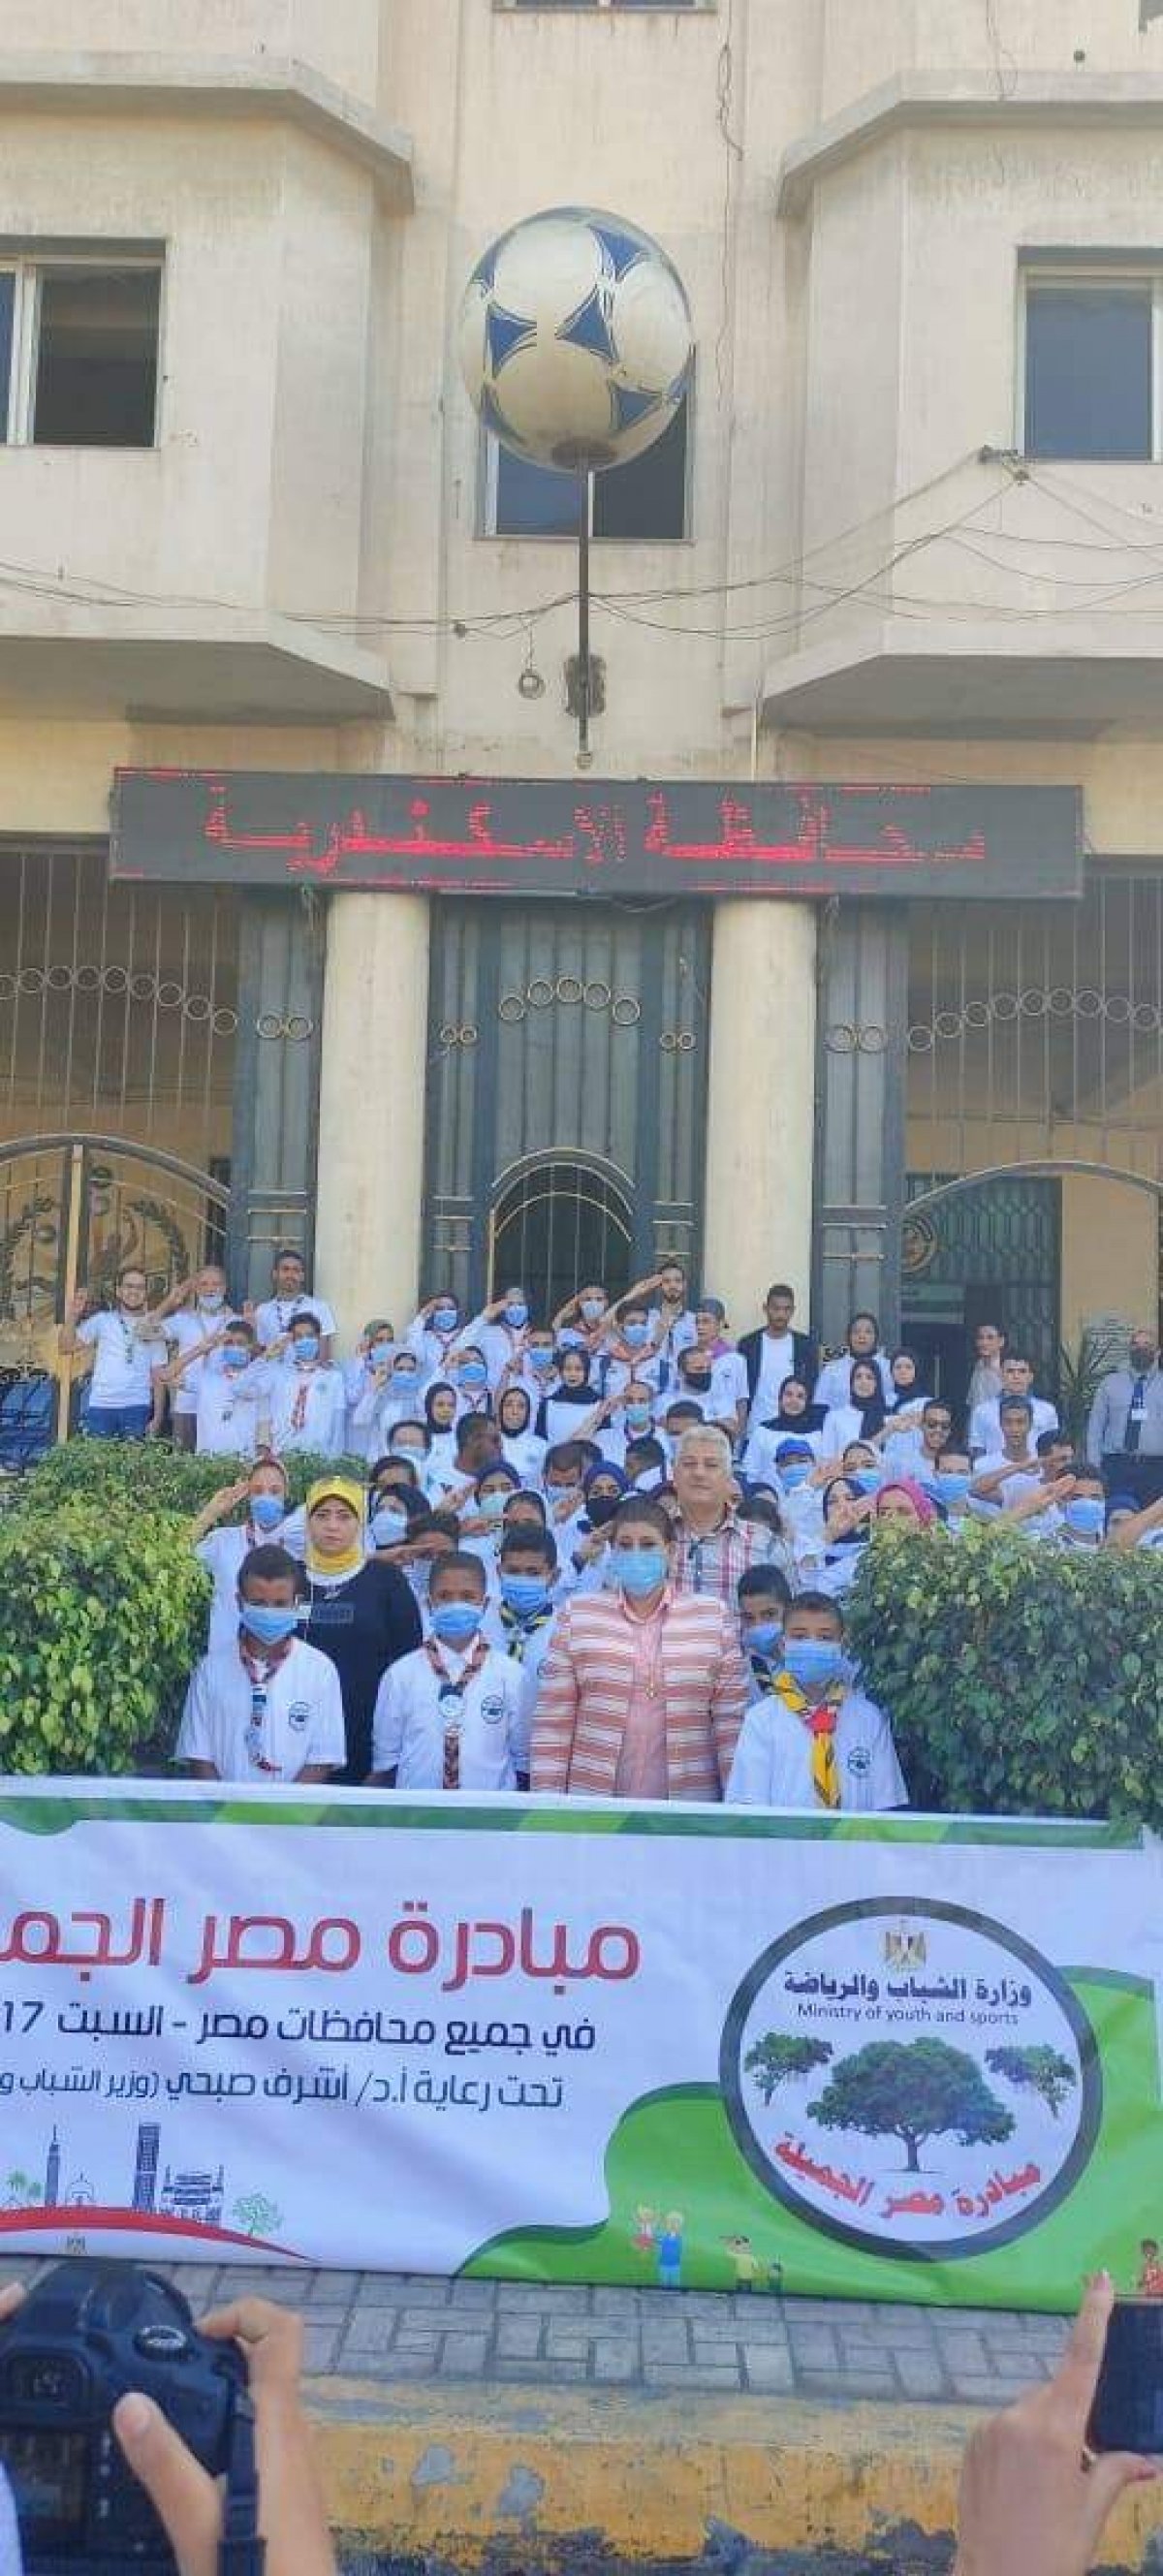 وزيرا الشباب والبيئة يطلقان فعاليات مبادرة "مصر الجميلة" ضمن احتفالات نصر أكتوبر